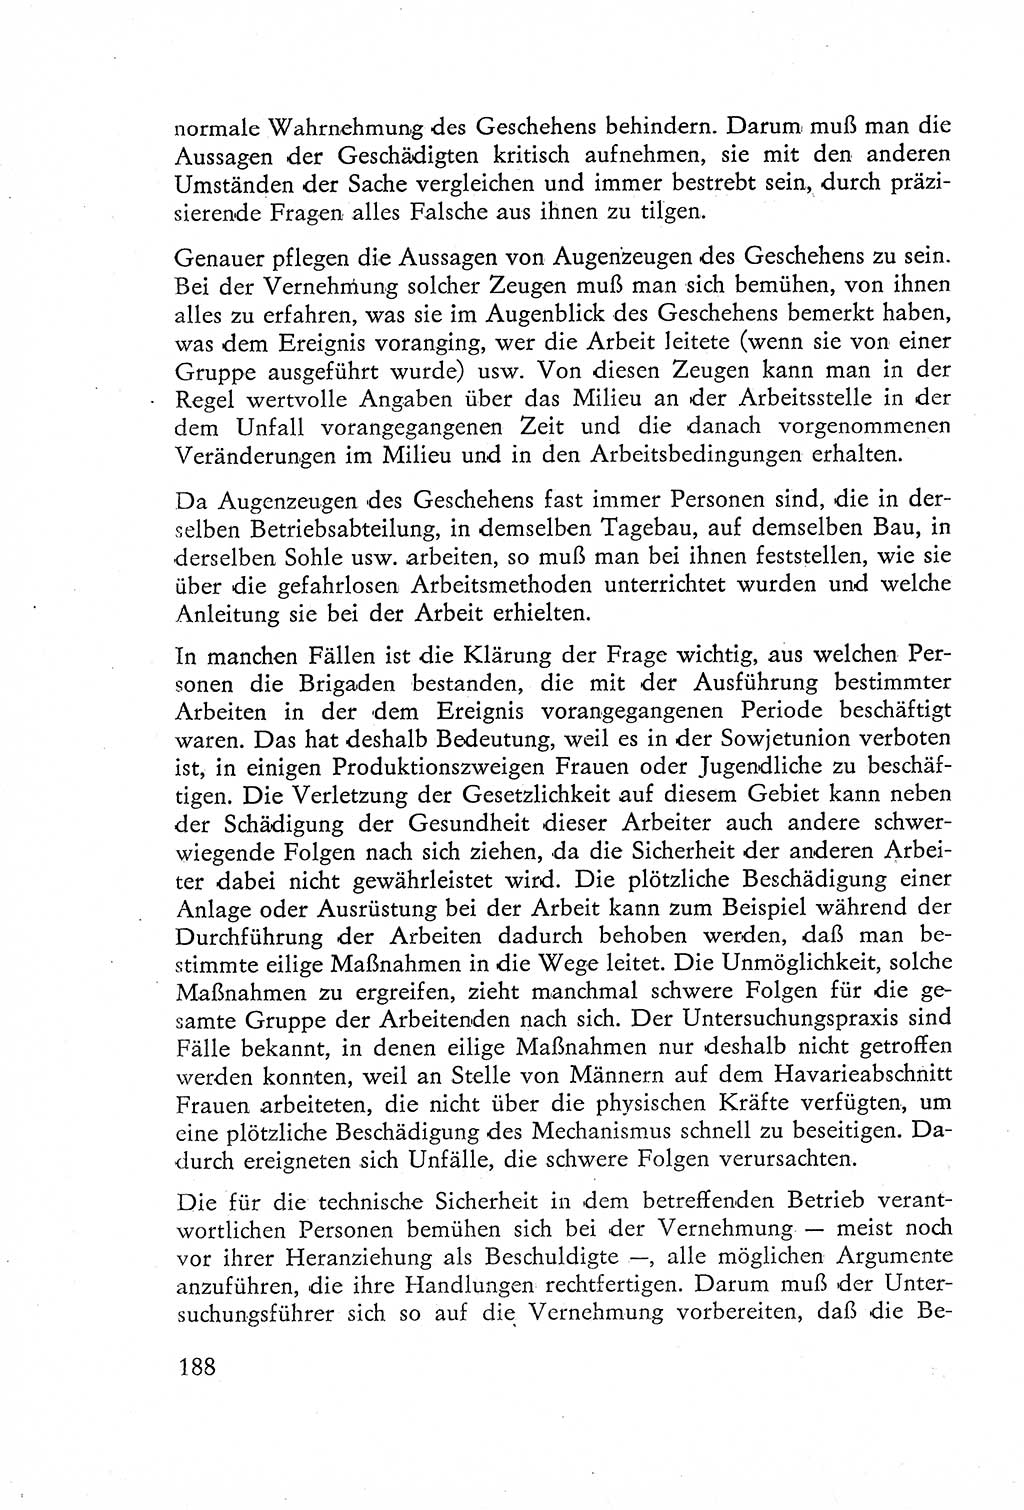 Die Untersuchung einzelner Verbrechensarten [Deutsche Demokratische Republik (DDR)] 1960, Seite 188 (Unters. Verbr.-Art. DDR 1960, S. 188)